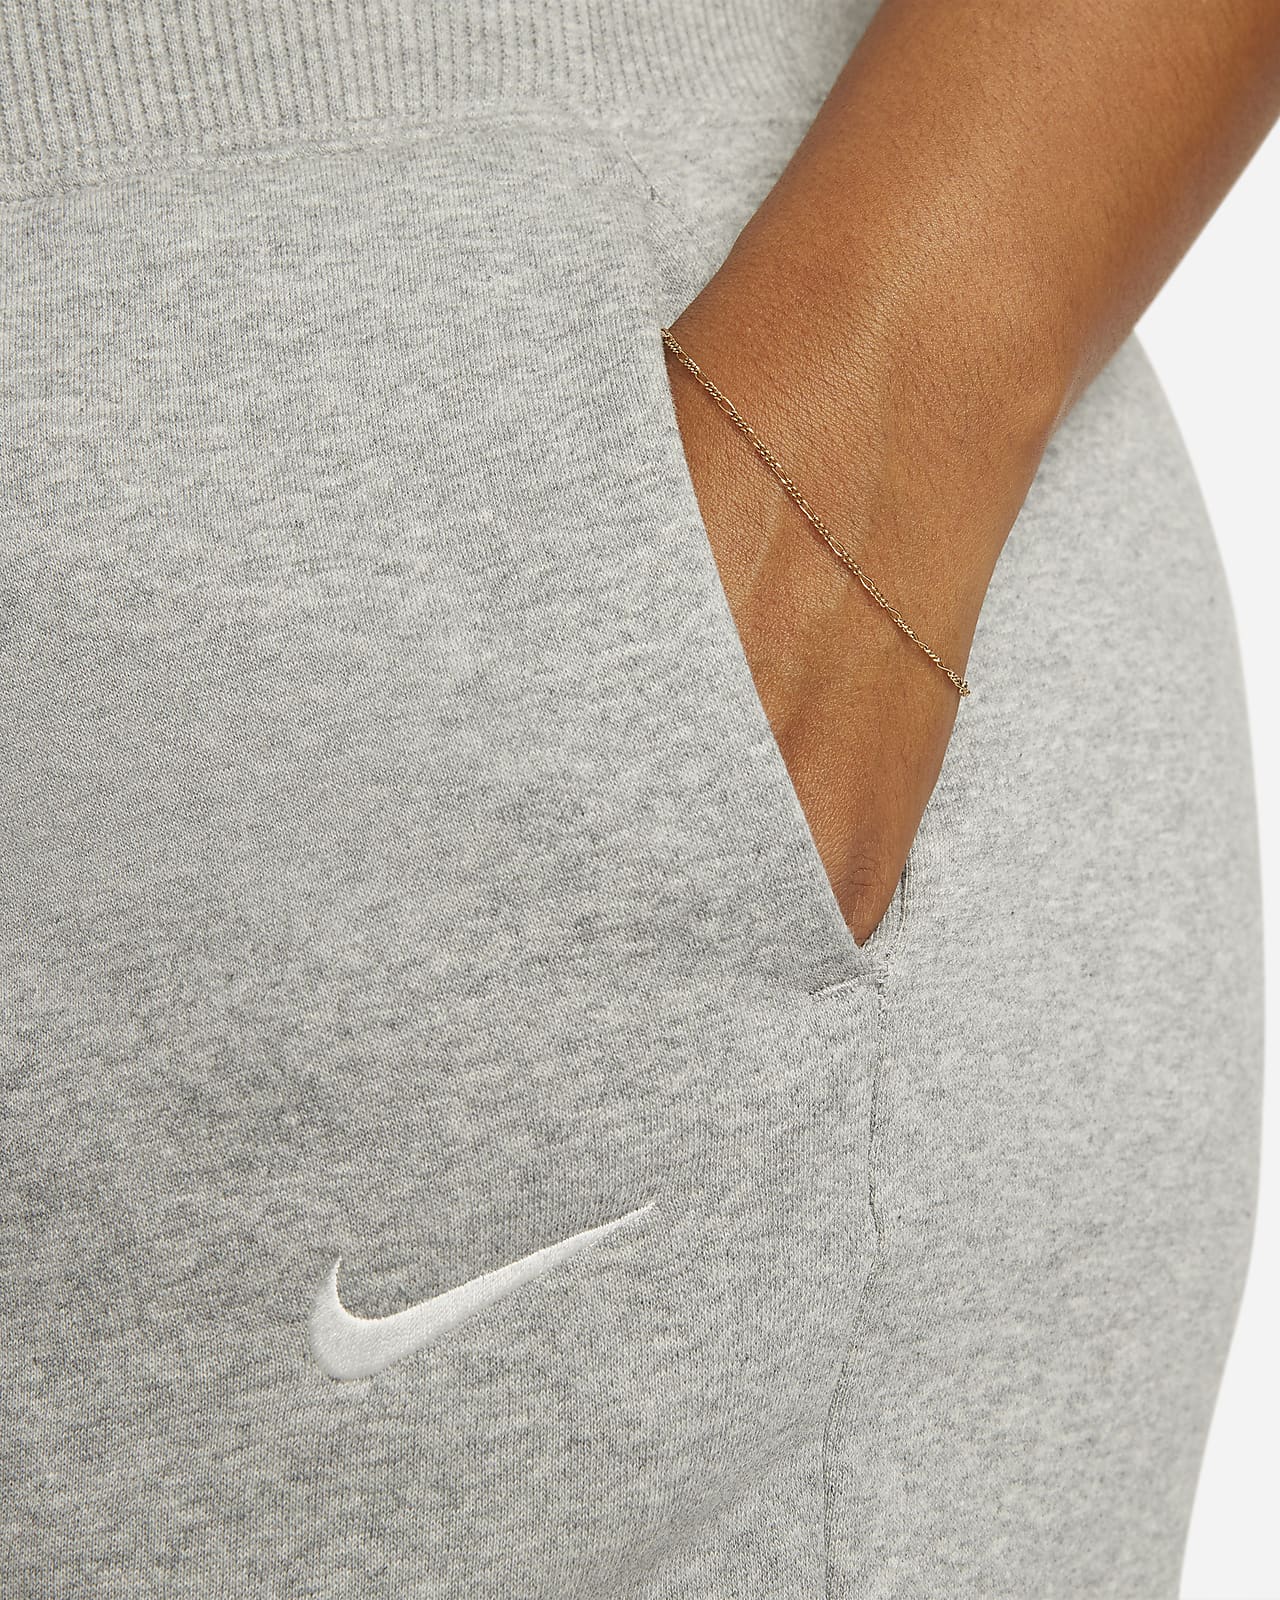 Nike Sportswear Phoenix Fleece Women's High-Waisted Wide-Leg Tracksuit  Bottoms (Plus Size)